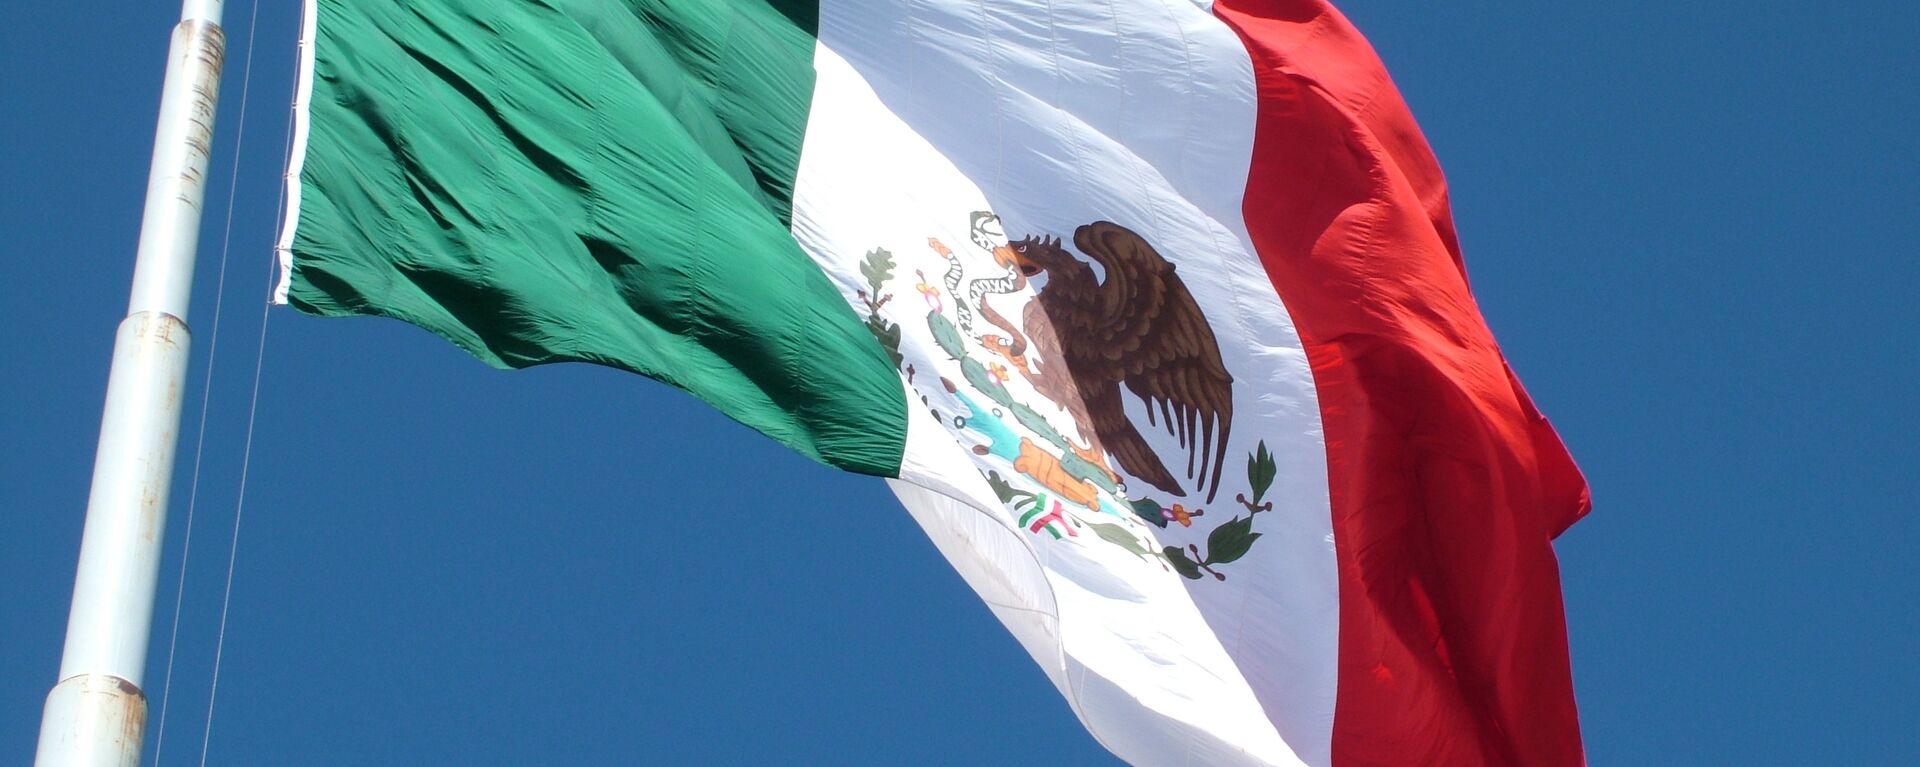 Bandera de México - Sputnik Mundo, 1920, 18.05.2021